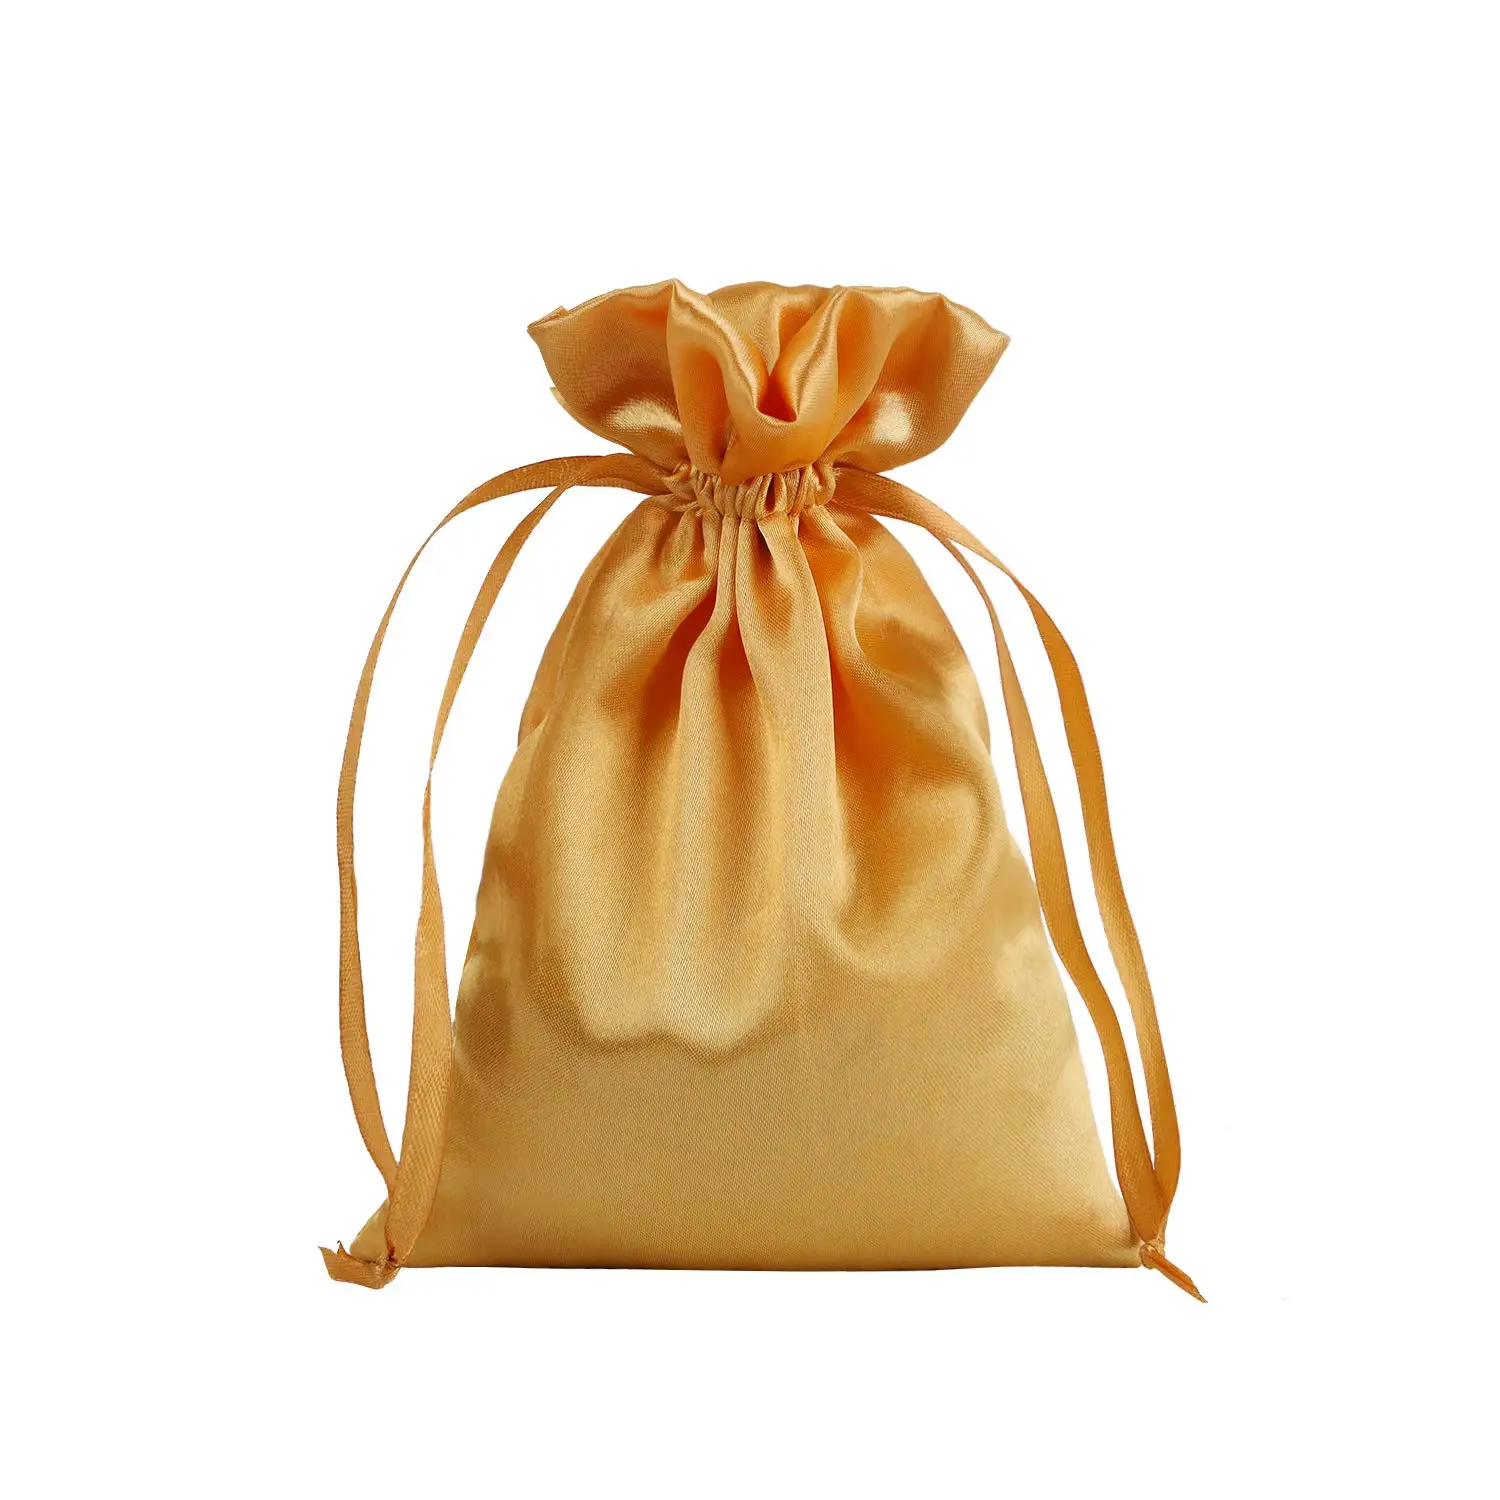 Оптовая продажа, Подарочный шелковый атласный мешочек для ювелирных изделий, упаковка для наращивания волос, цветной атласный мешок с индивидуальным логотипом